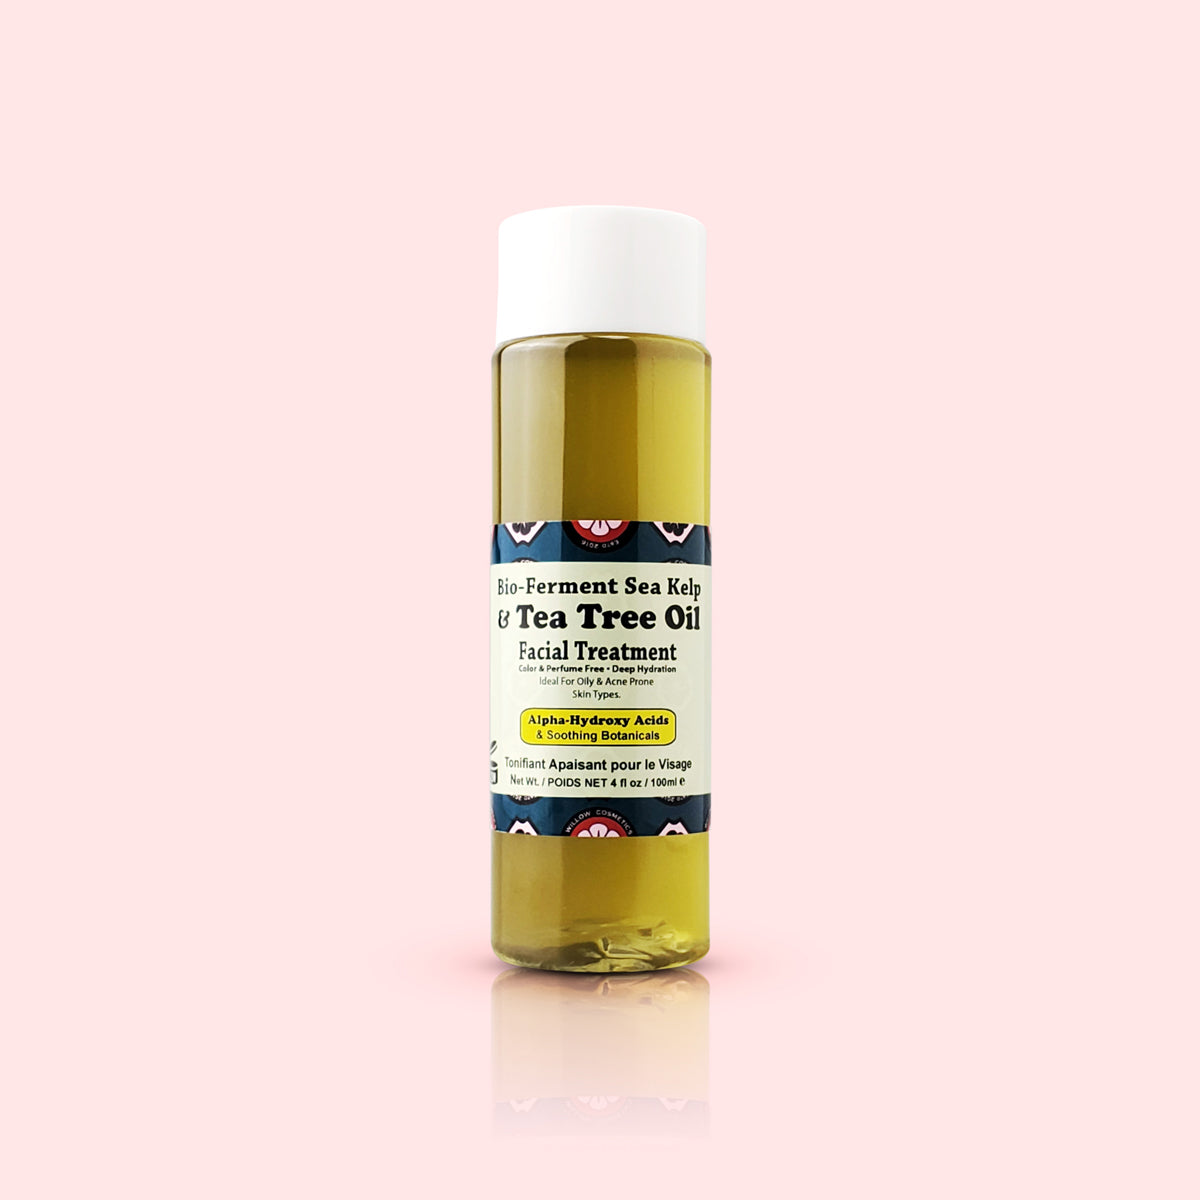 Bio-Ferment Sea Kelp & Tea Tree Oil